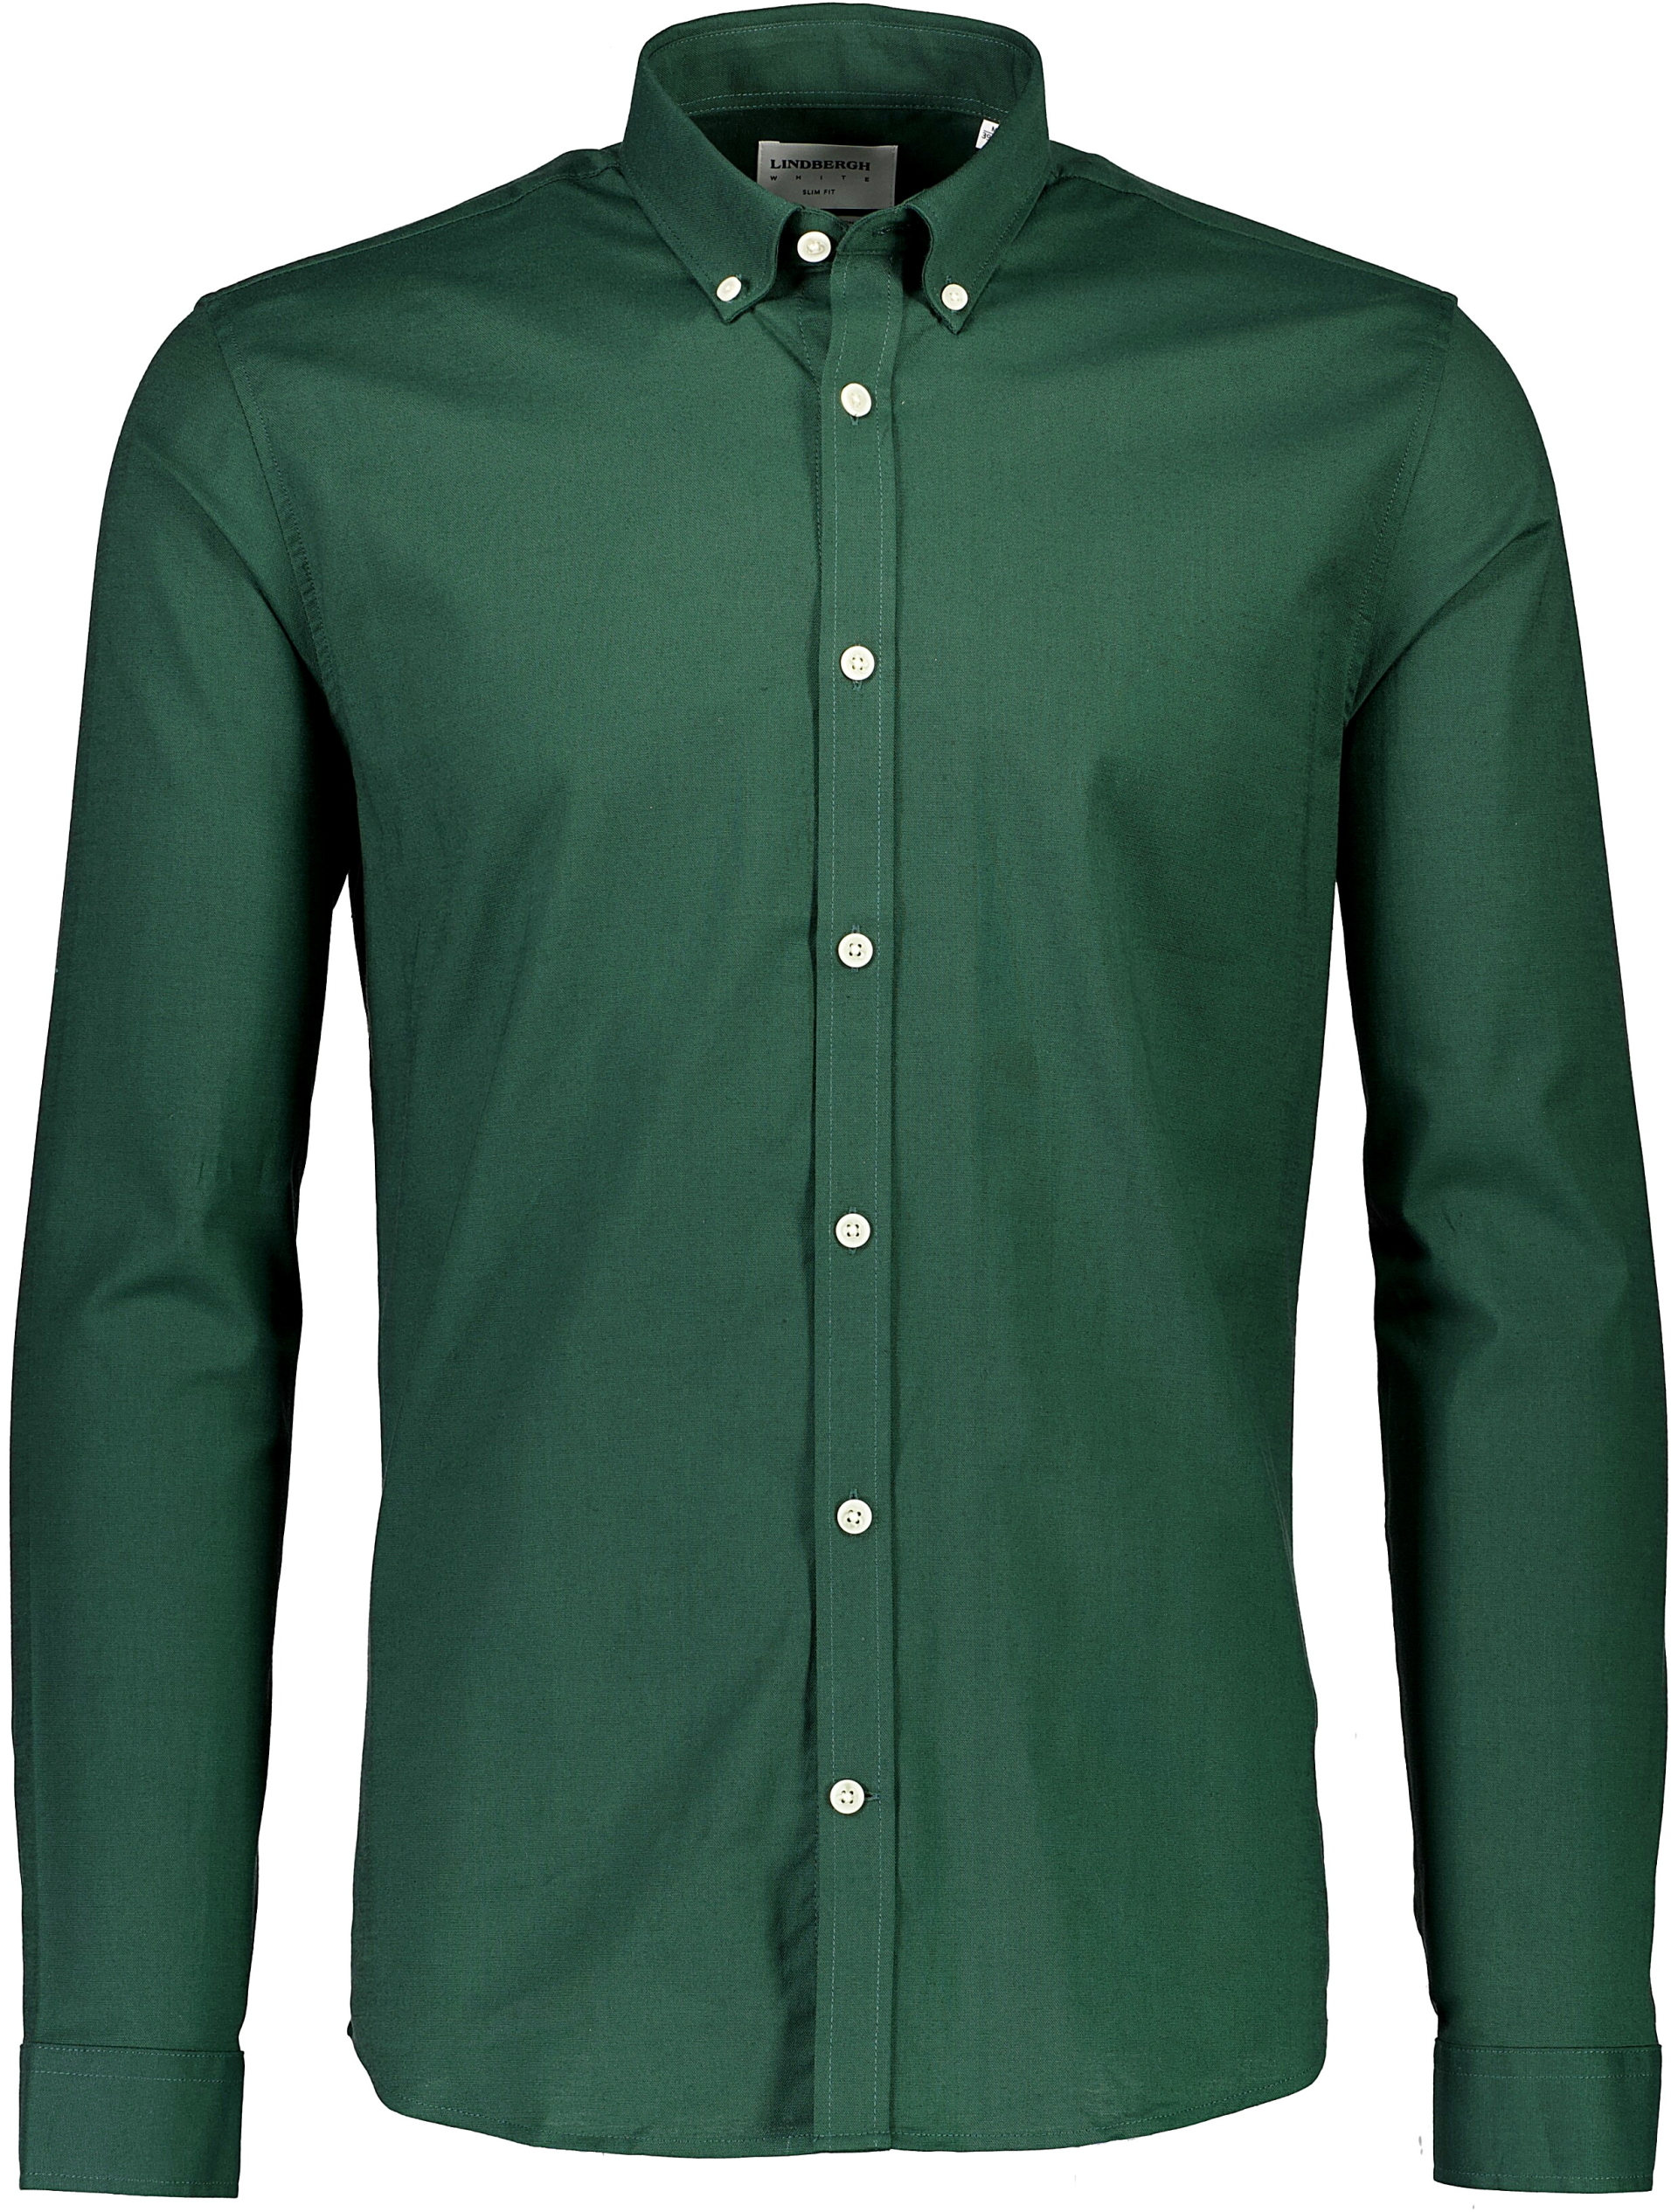 Lindbergh Oxford shirt green / dk green mix